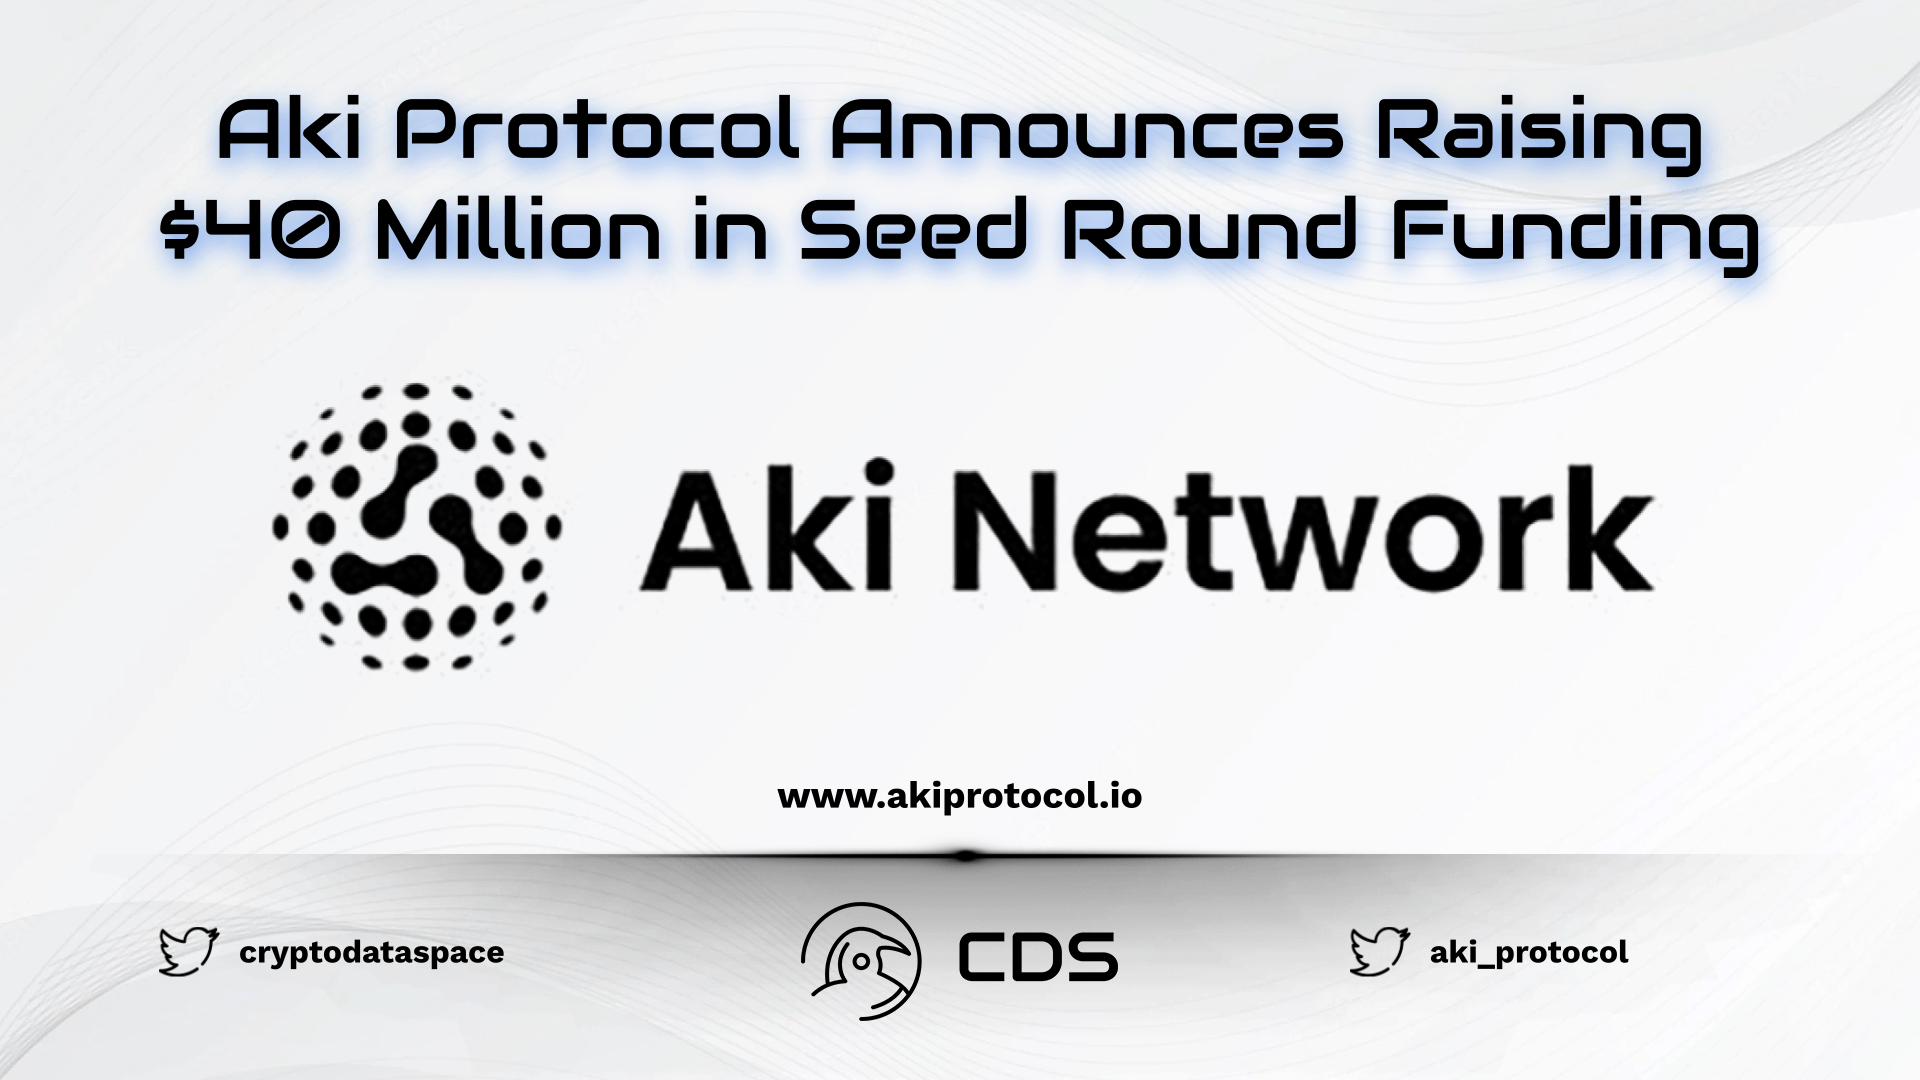 Aki Protocol Announces Raising $40 Million in Seed Round Funding